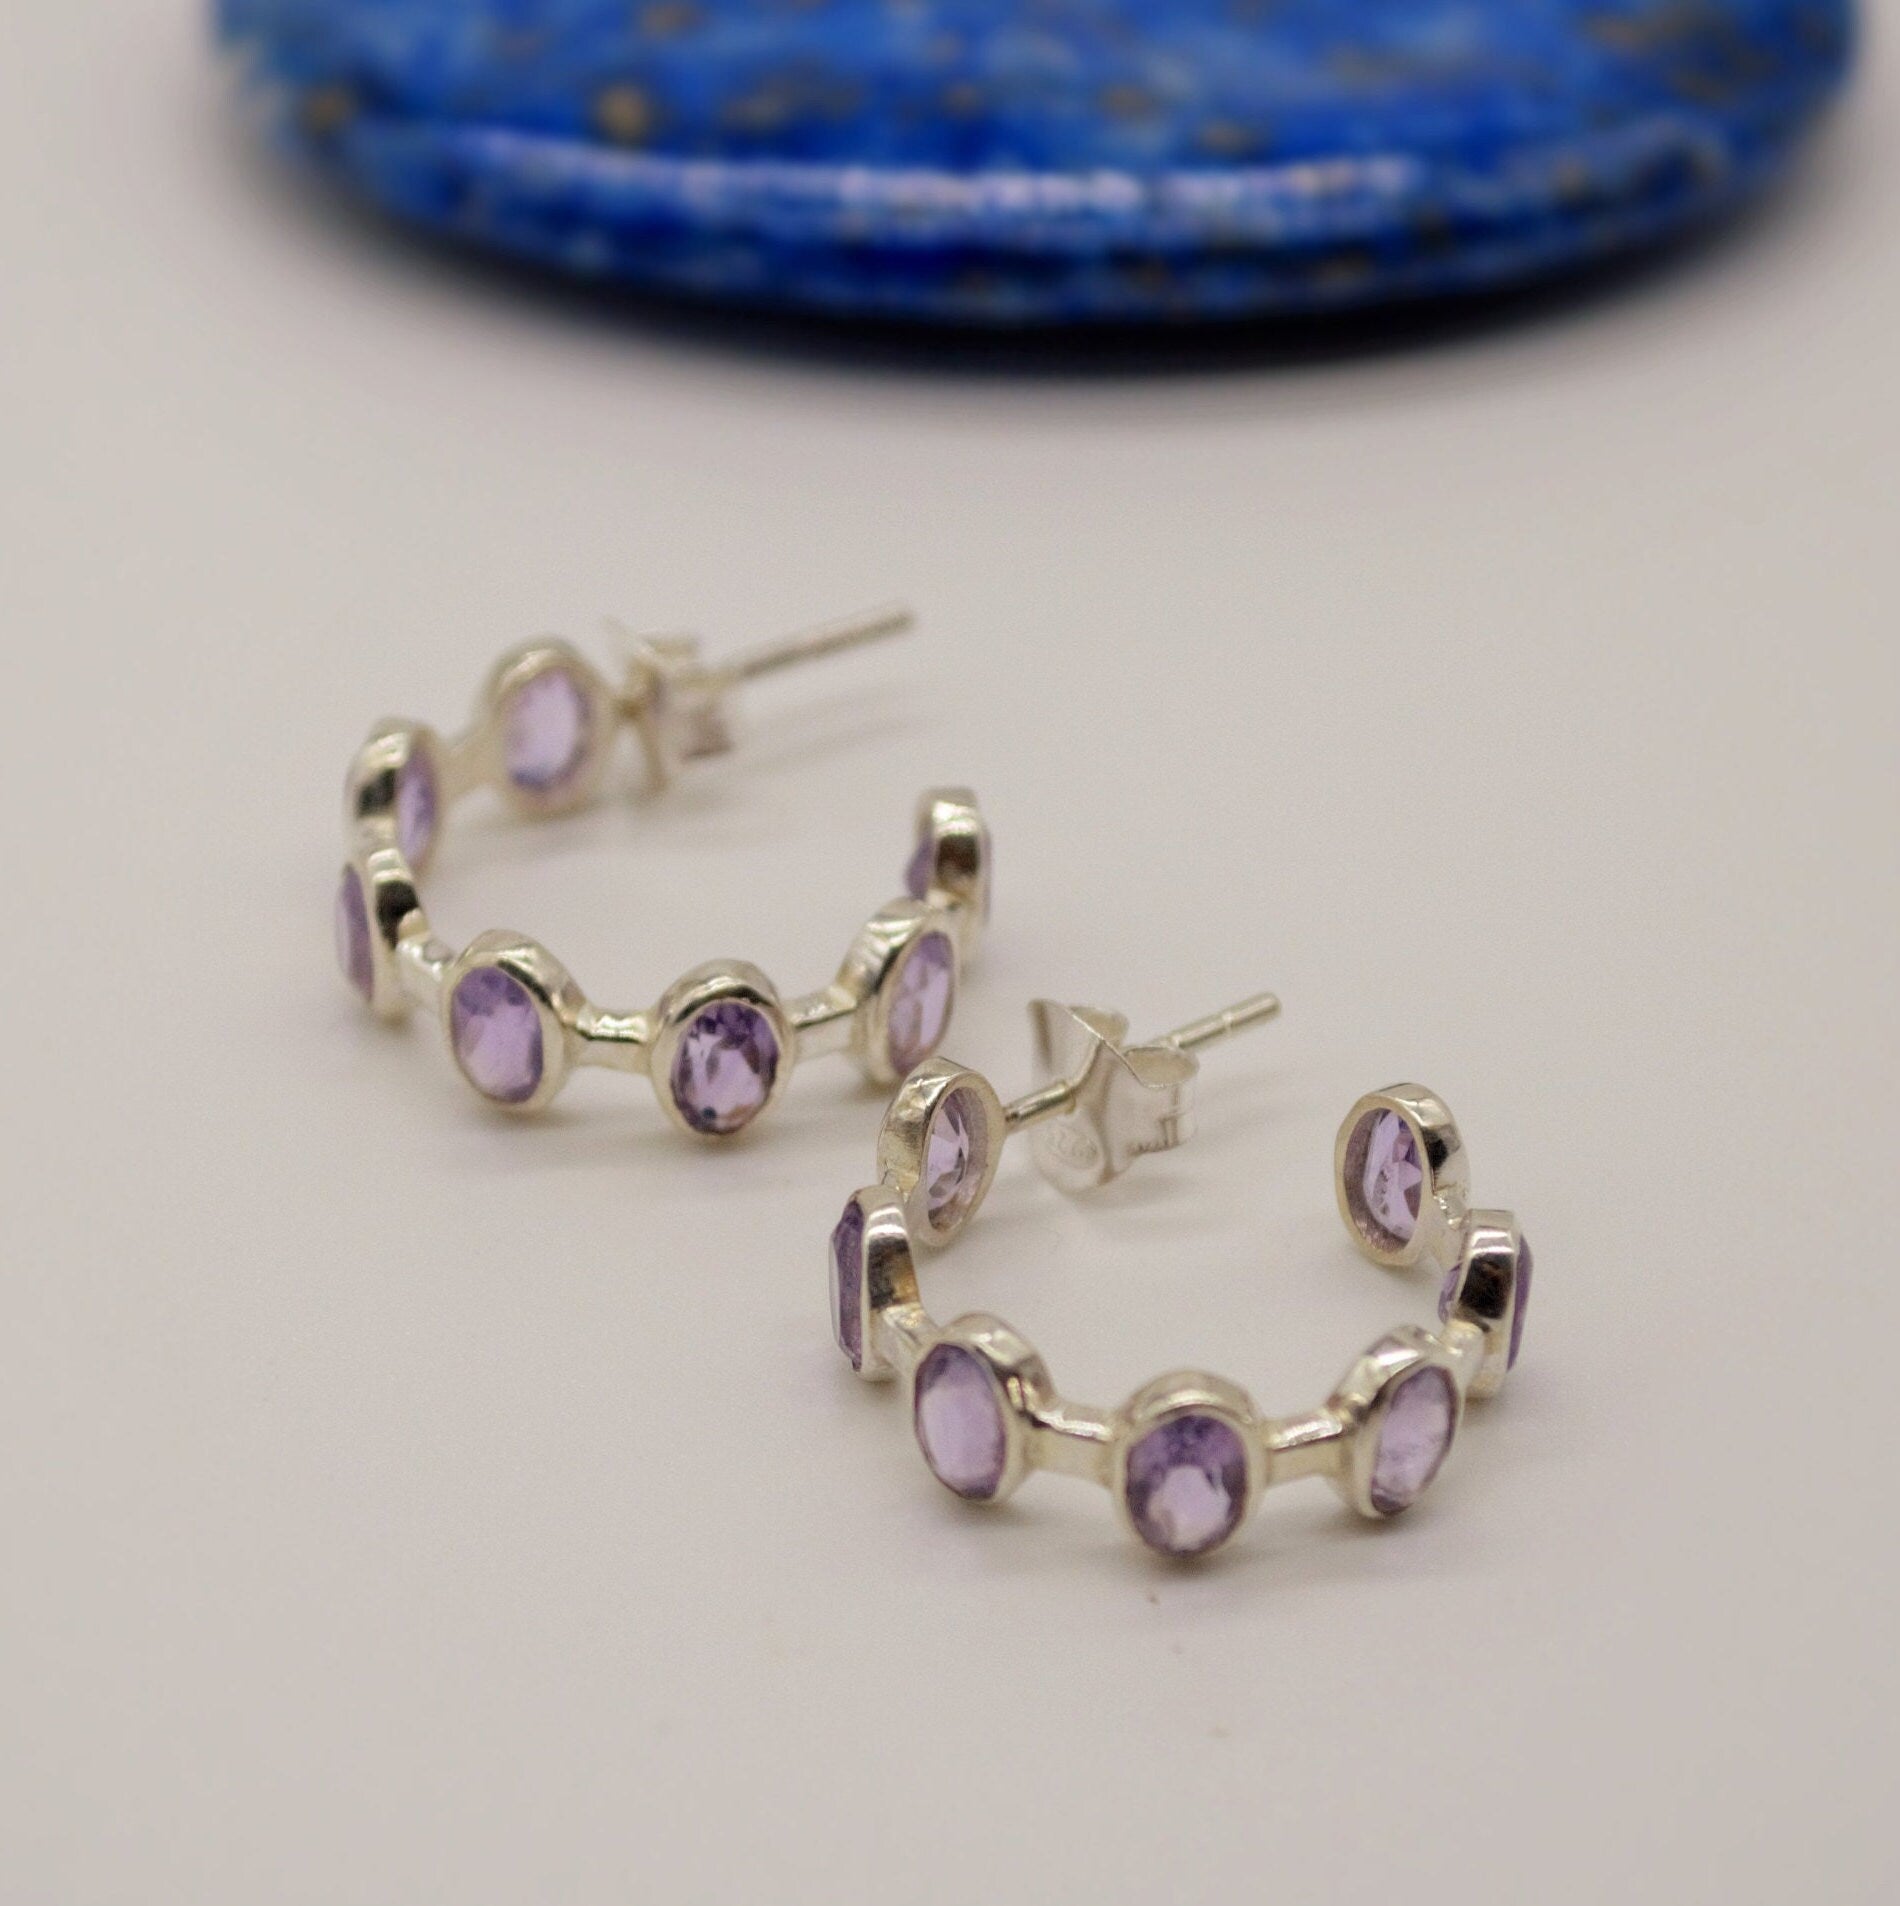 Amethyst Sterling Silver Hoop Earrings, Amethyst Jewelry, February Birthstone Earrings, Minimalist Purple Earrings, Unique Gifts For Her